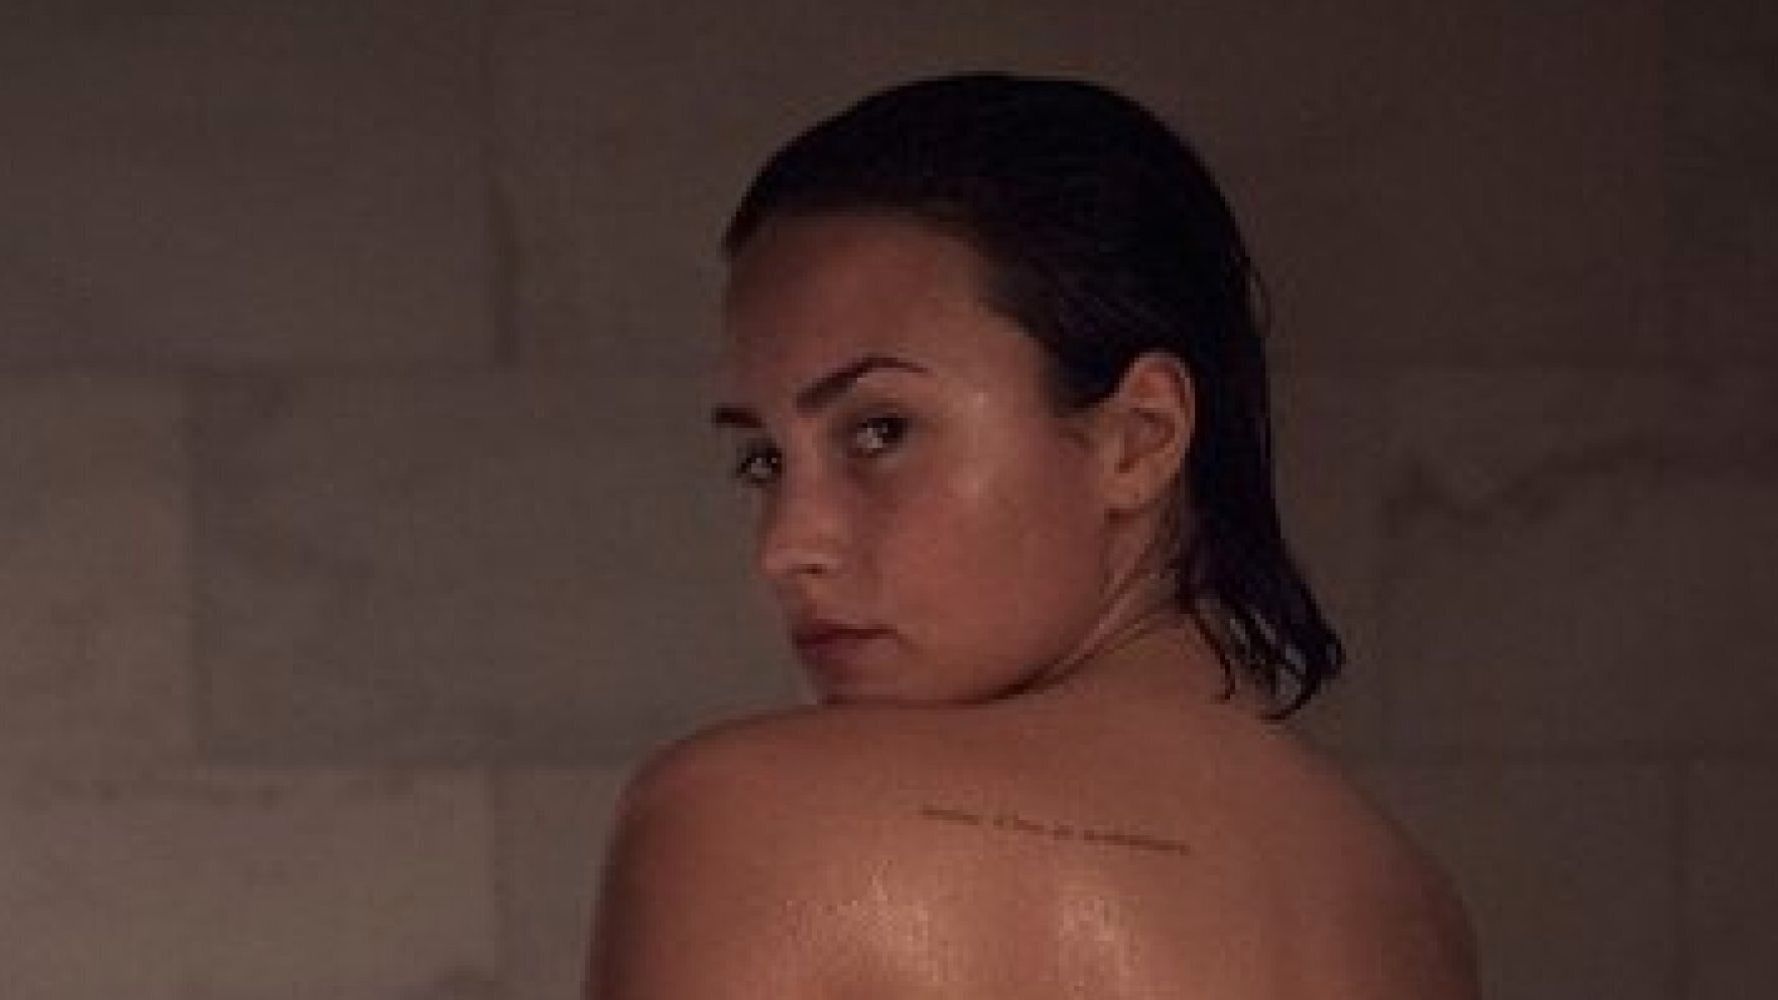 Demi Lovato S Naked Vanity Fair Shoot Proves Not All